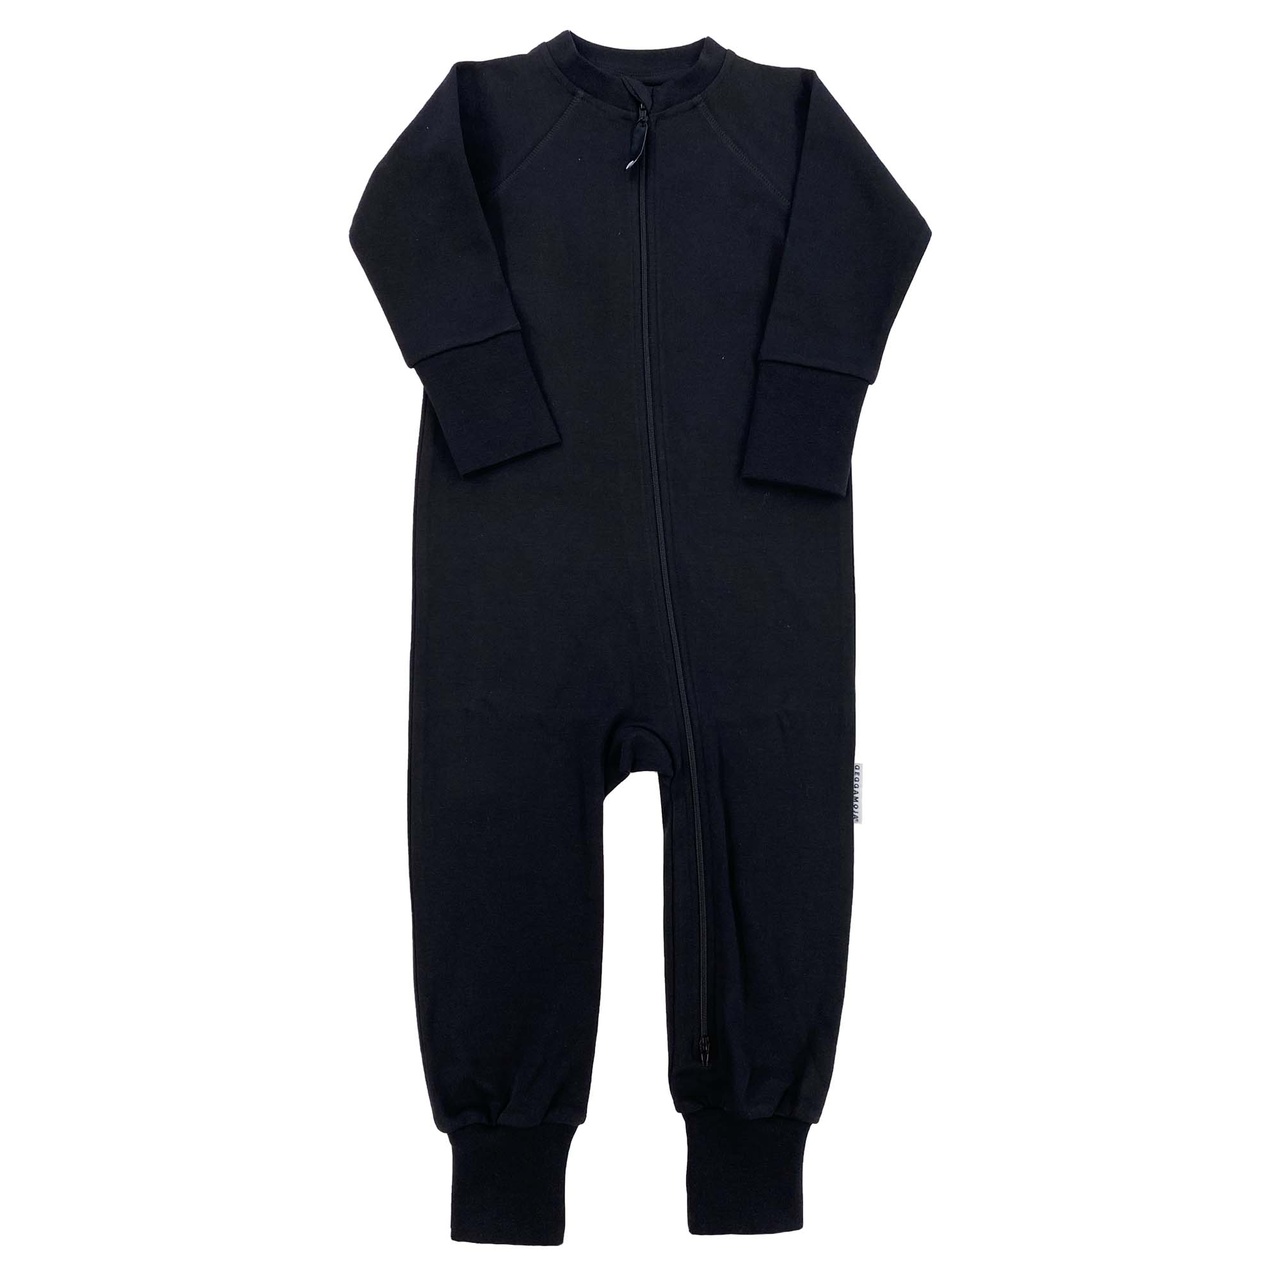 Pyjamas/suit Black 74/80